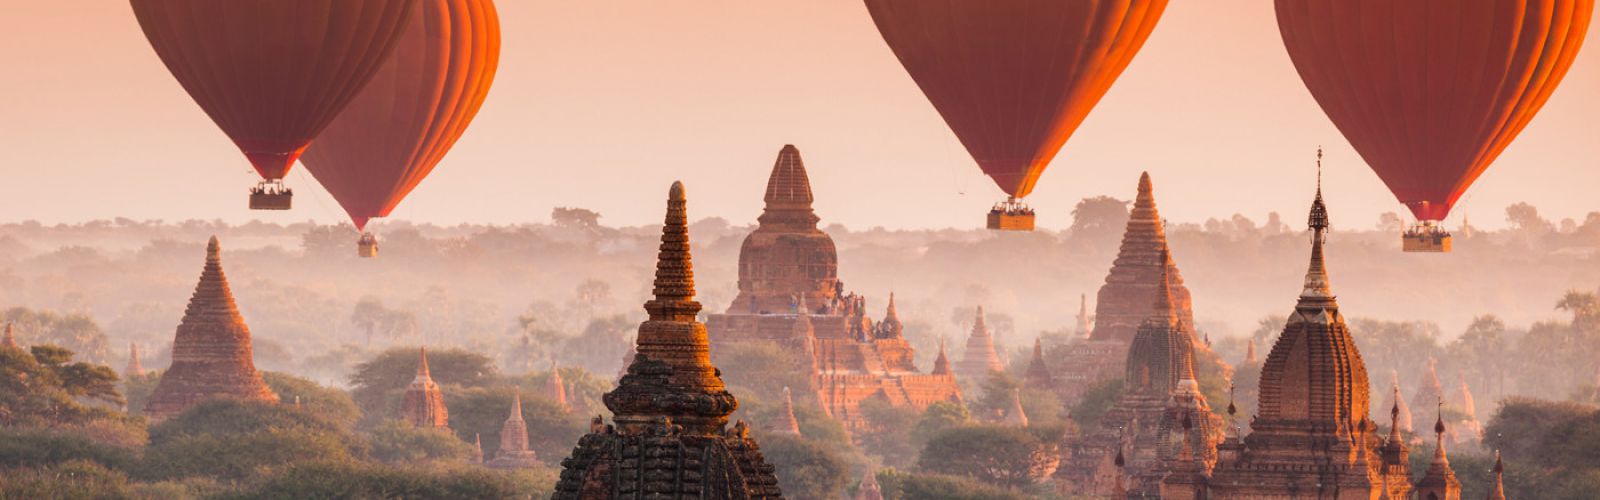 Destinations in Myanmar